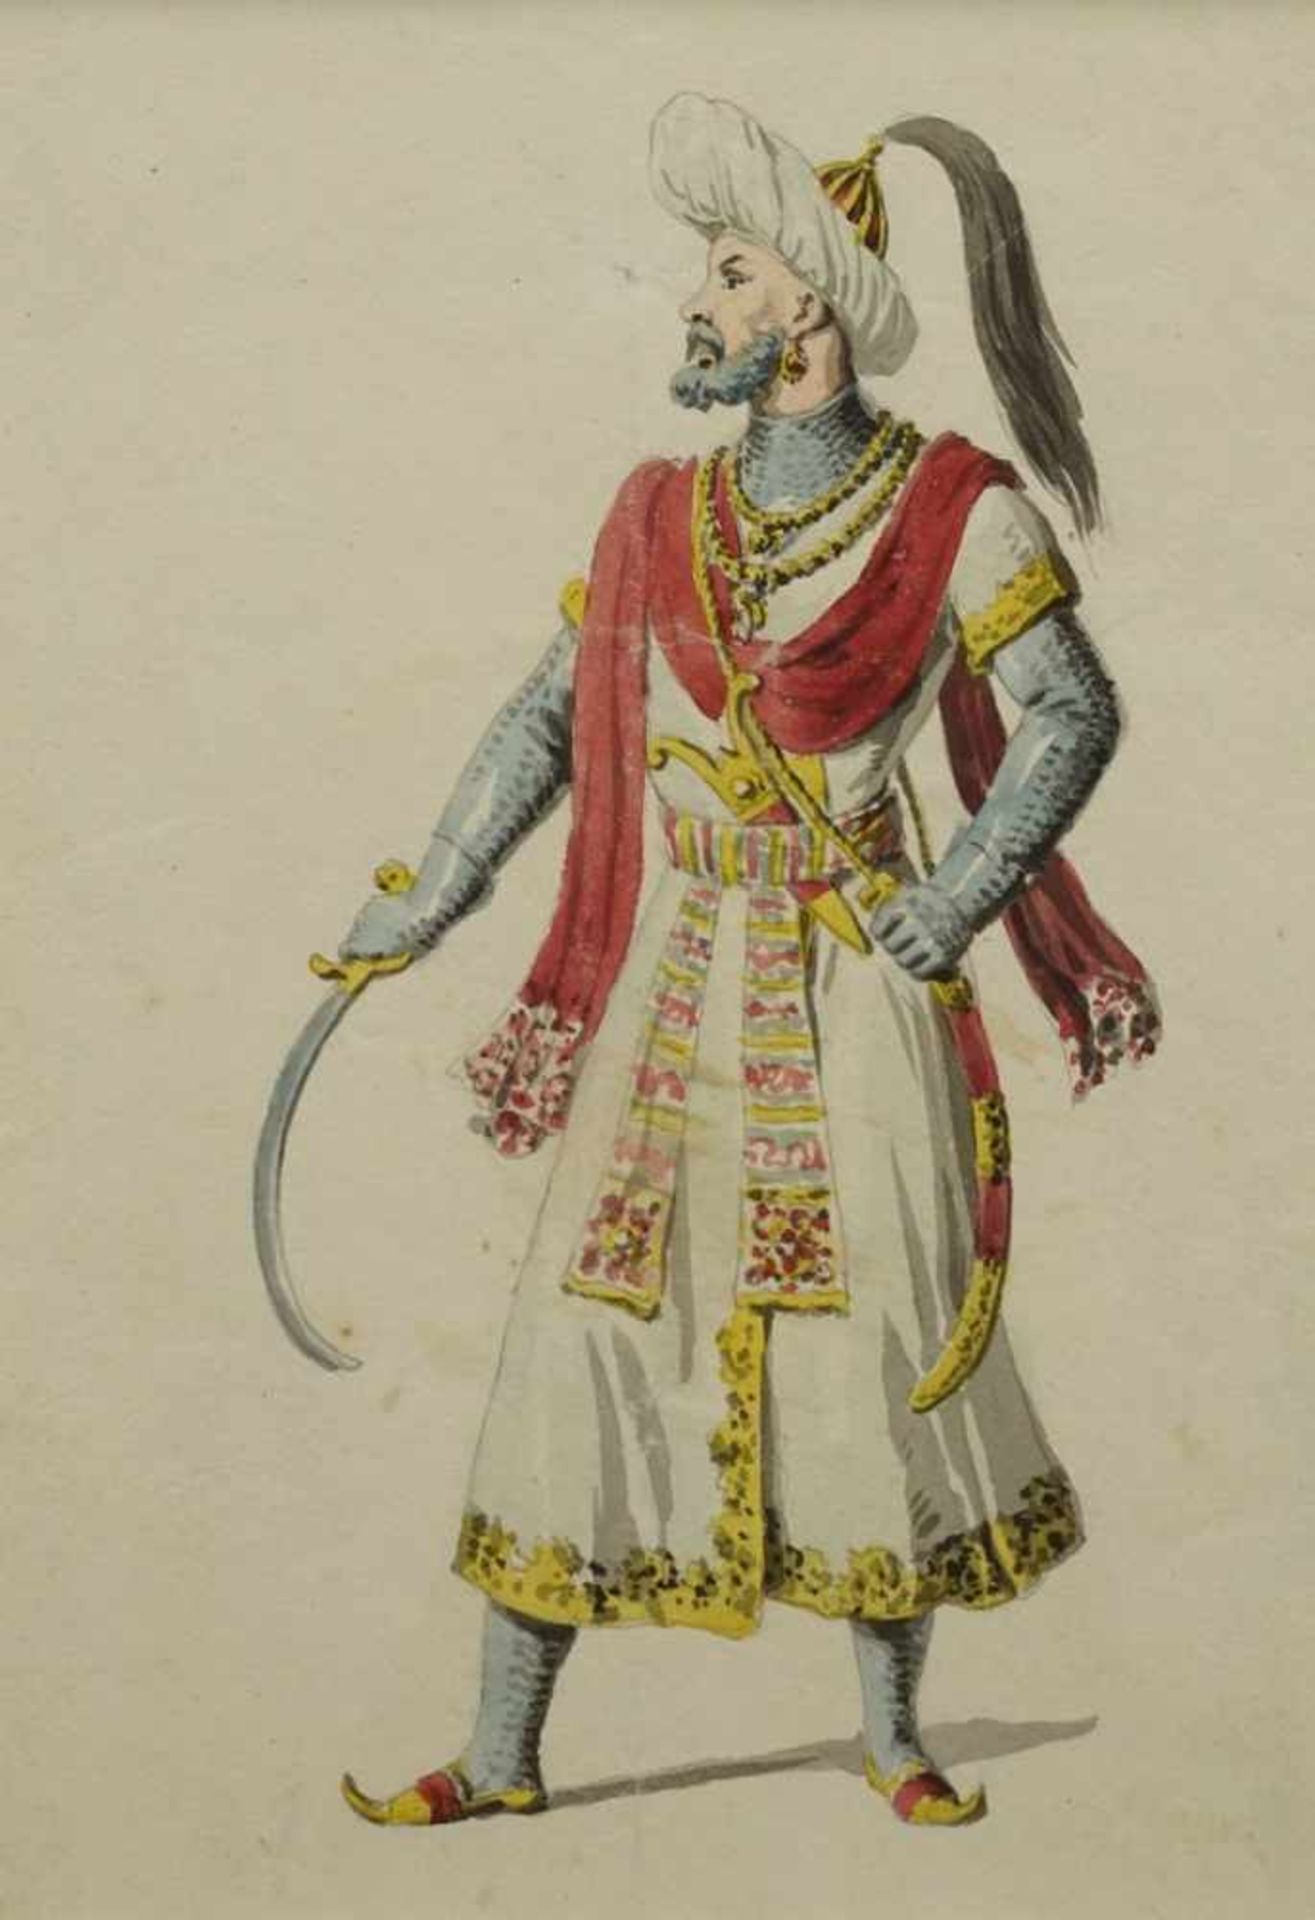 Unbekannter Künstler, "Osmanischer Krieger"Aquarell/Papier, um 1840, mit prachtvollem Gewand und